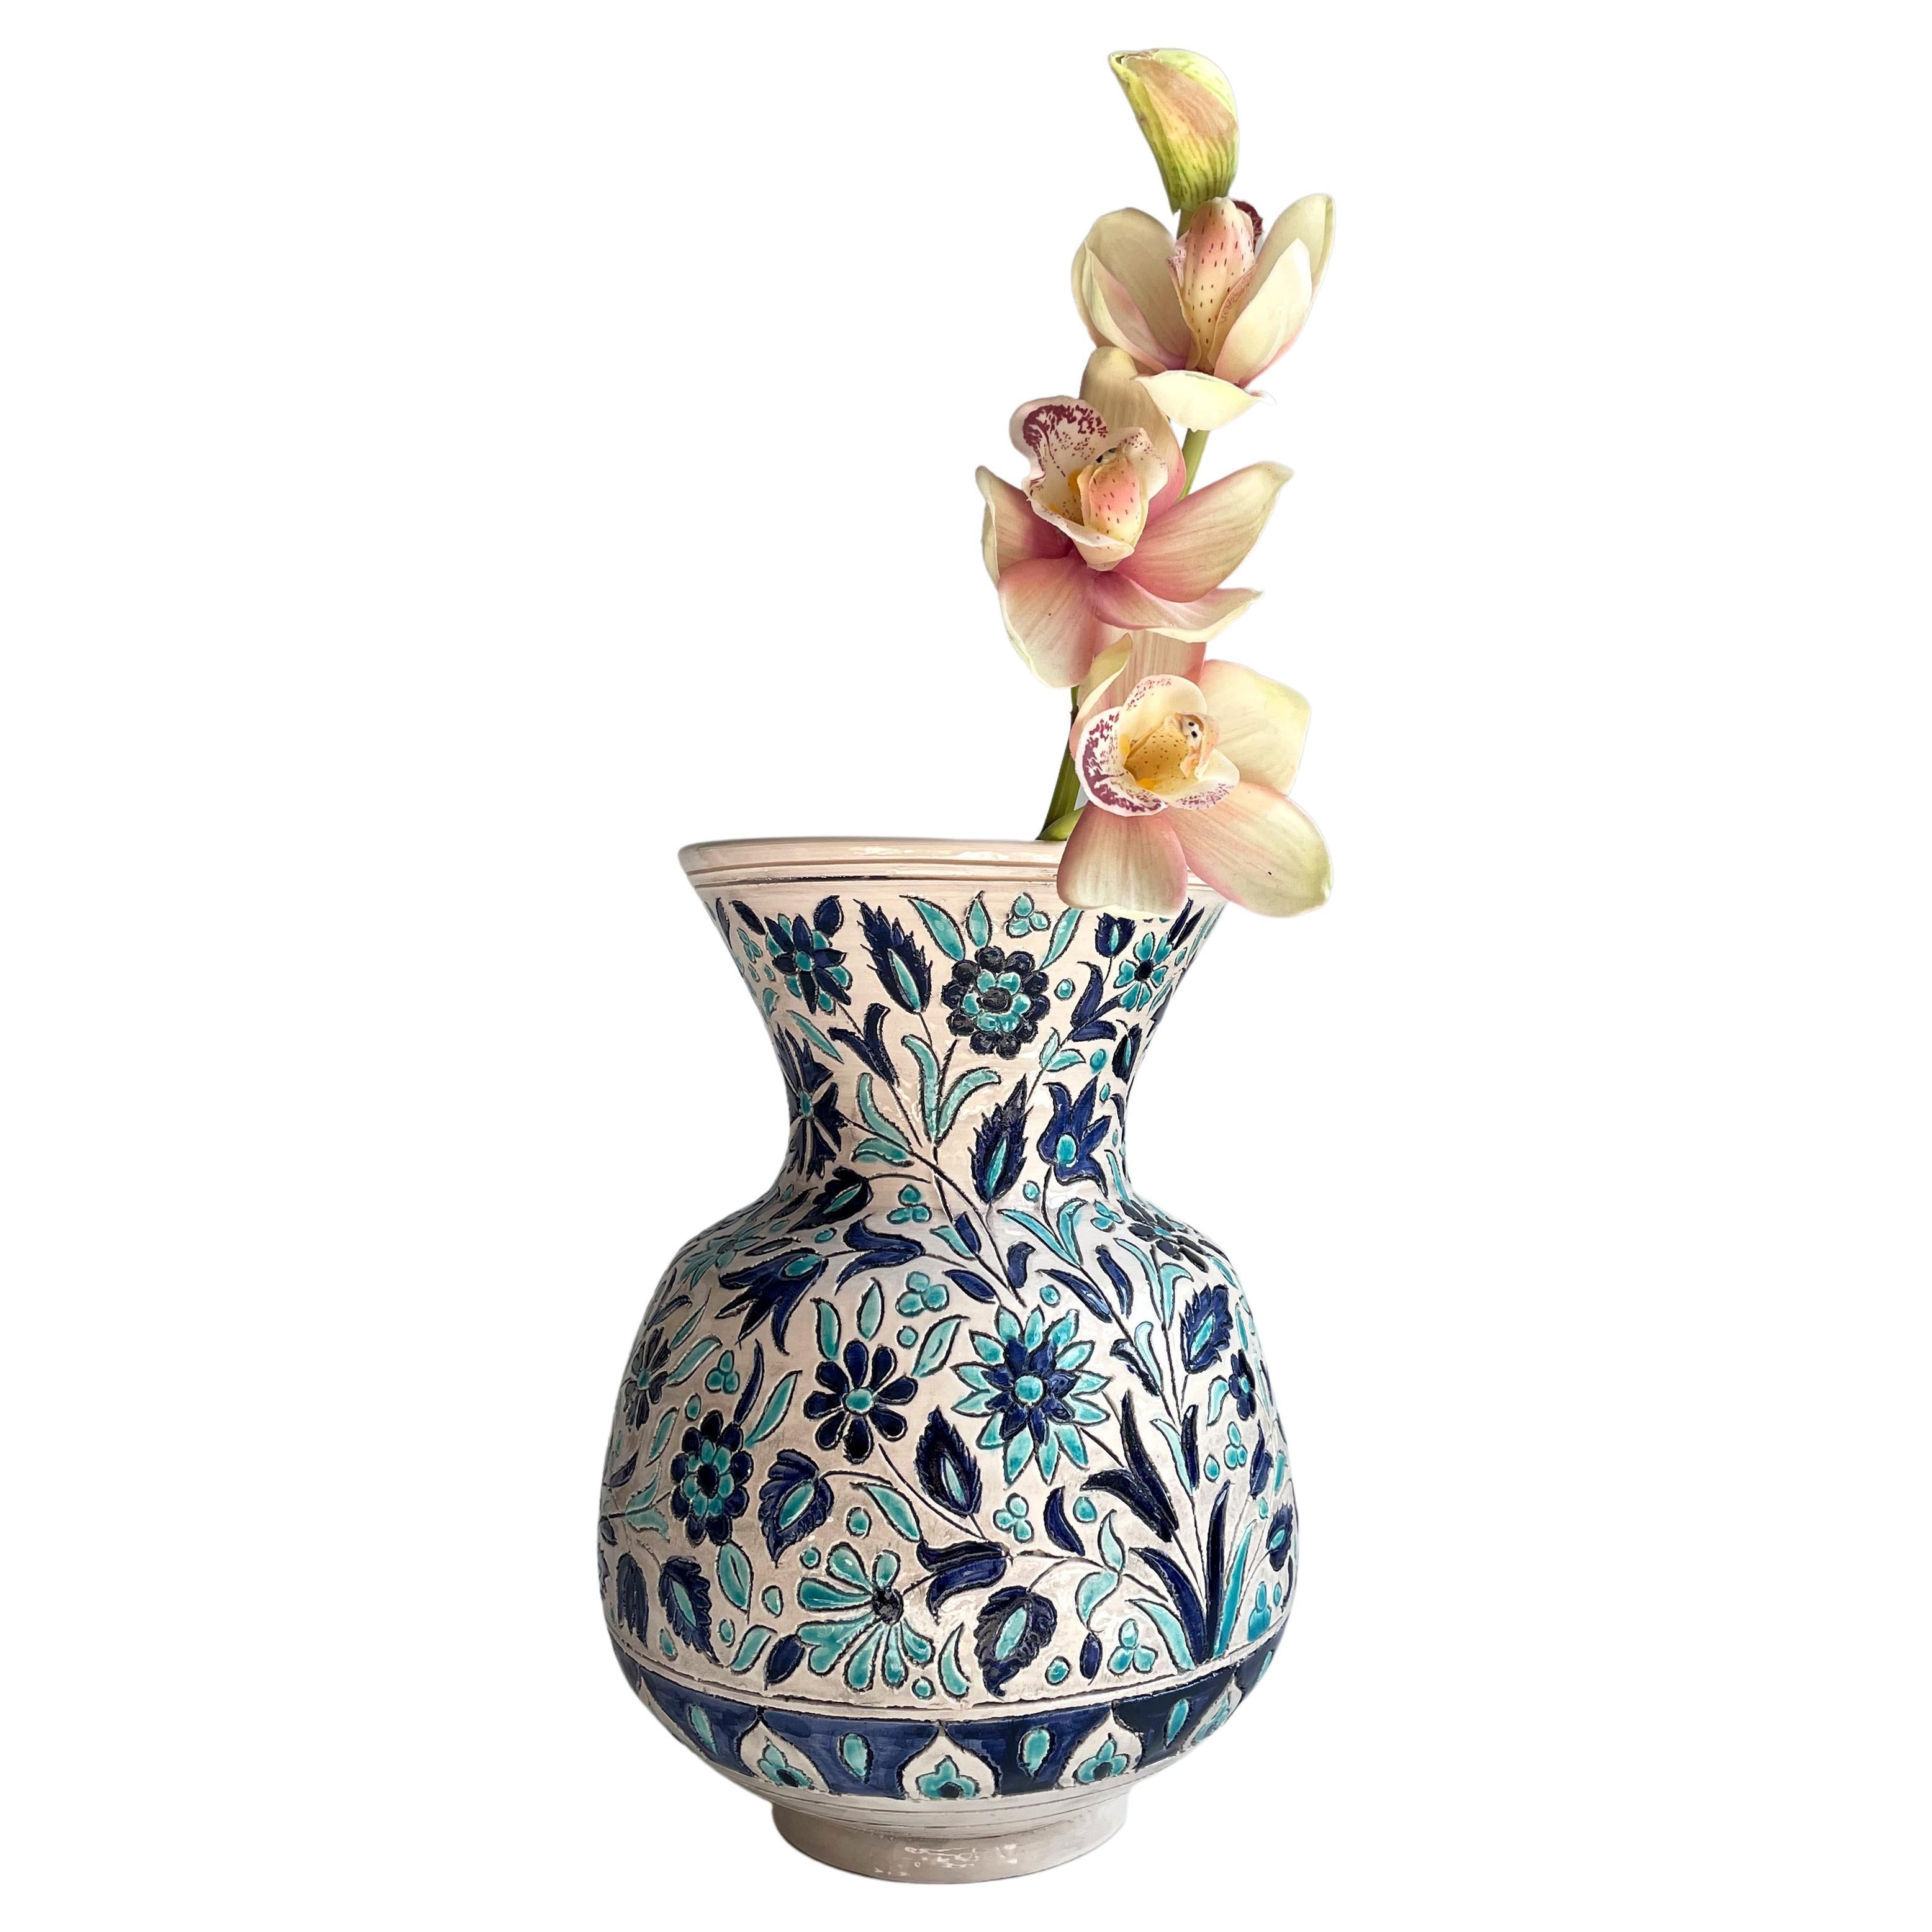 Grand vase turc vintage en céramique à fleurs bleues et blanches